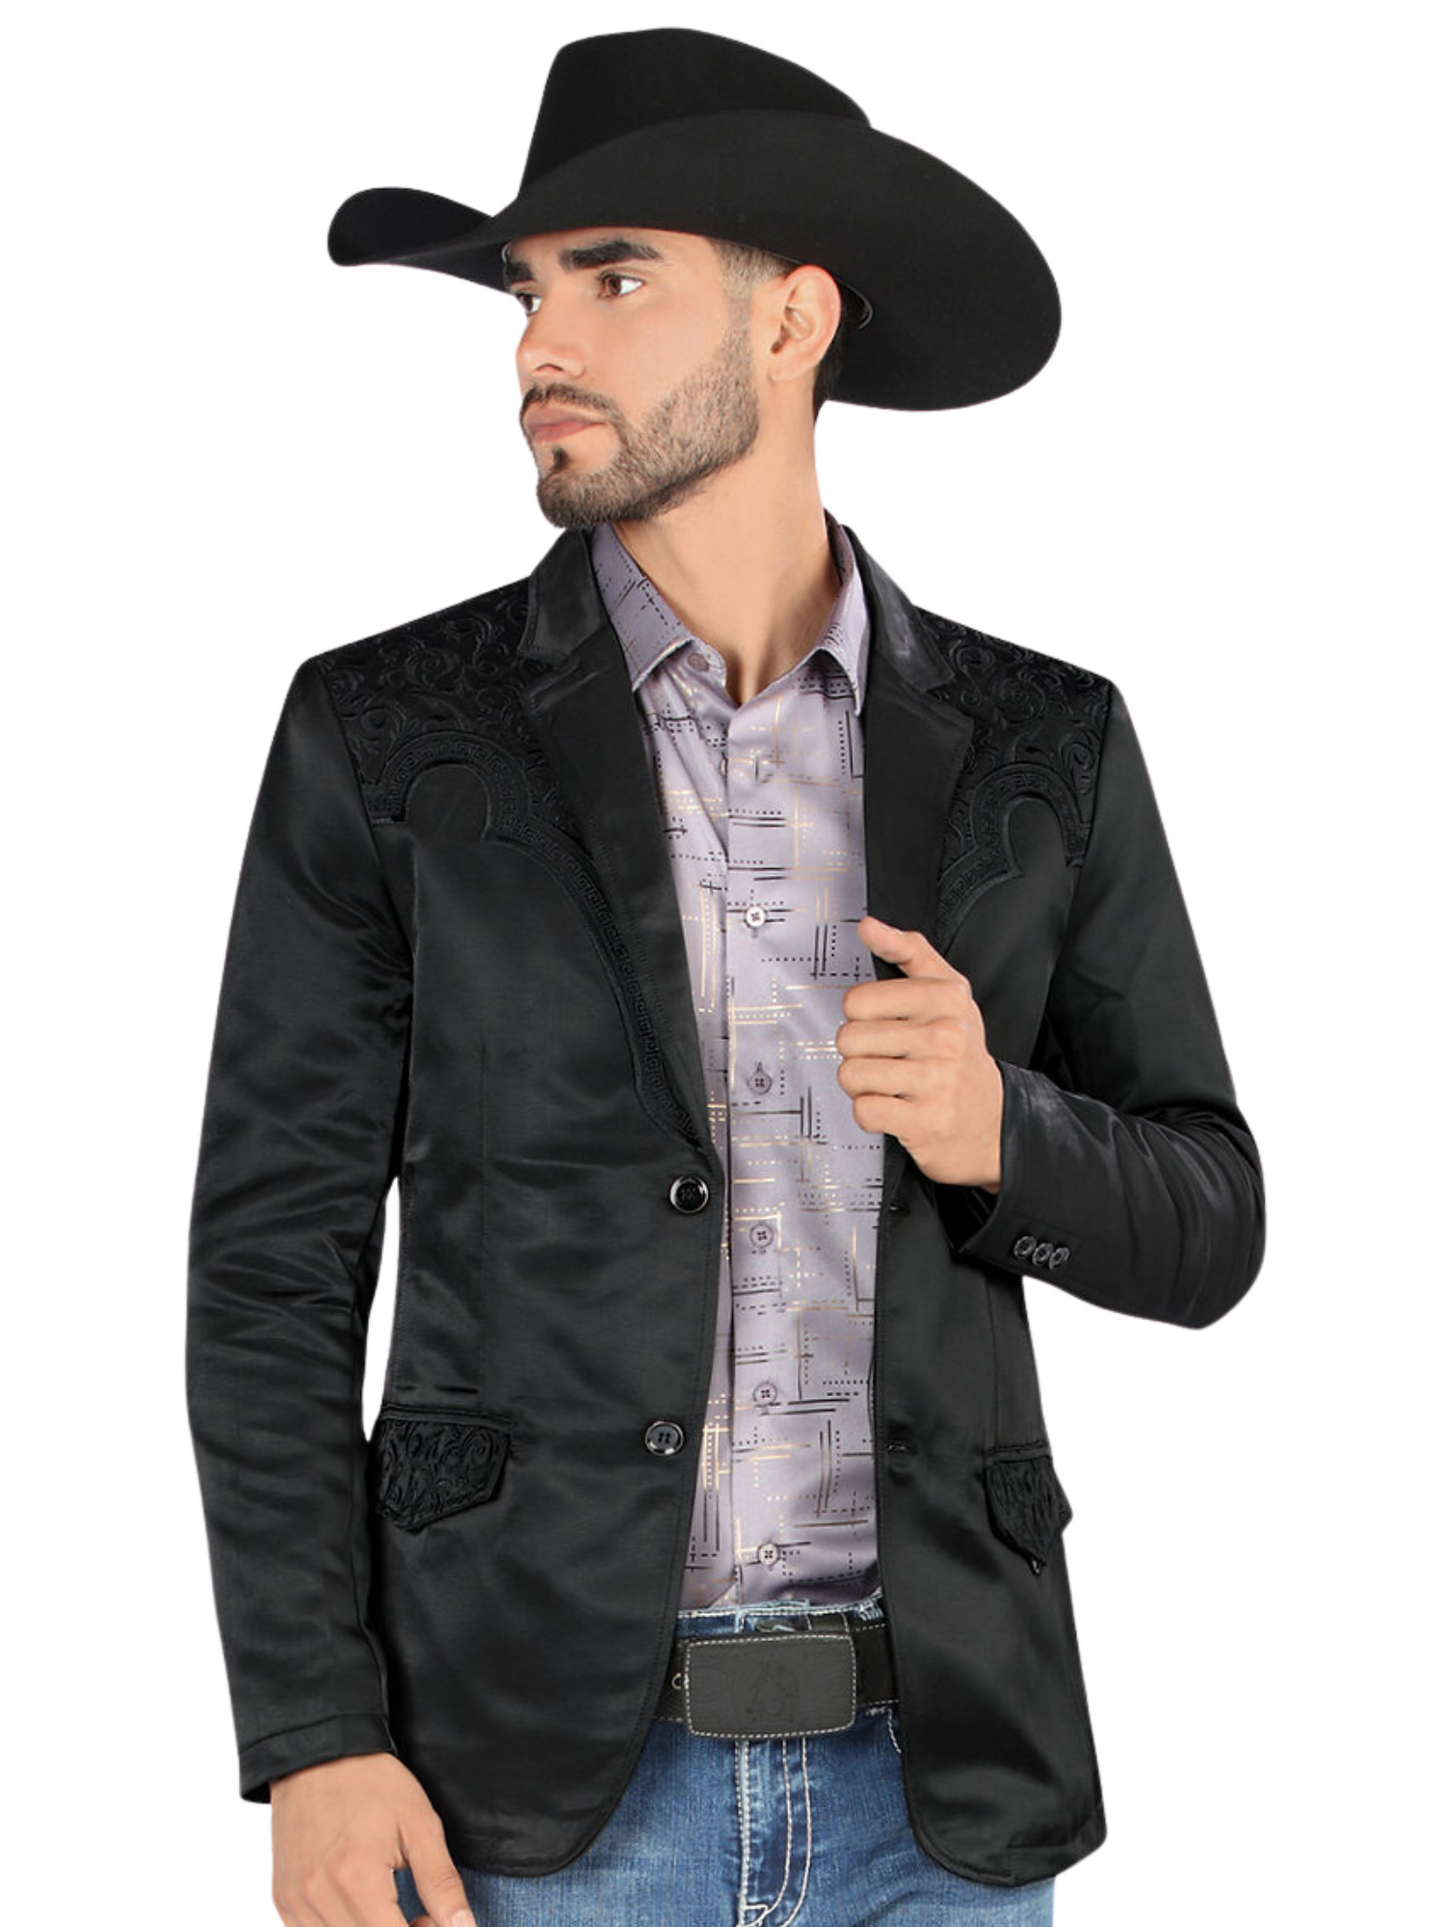 Embroidered Denim Jacket for Men 'Montero' - ID: 2179 Western Blazer Montero Black/Black